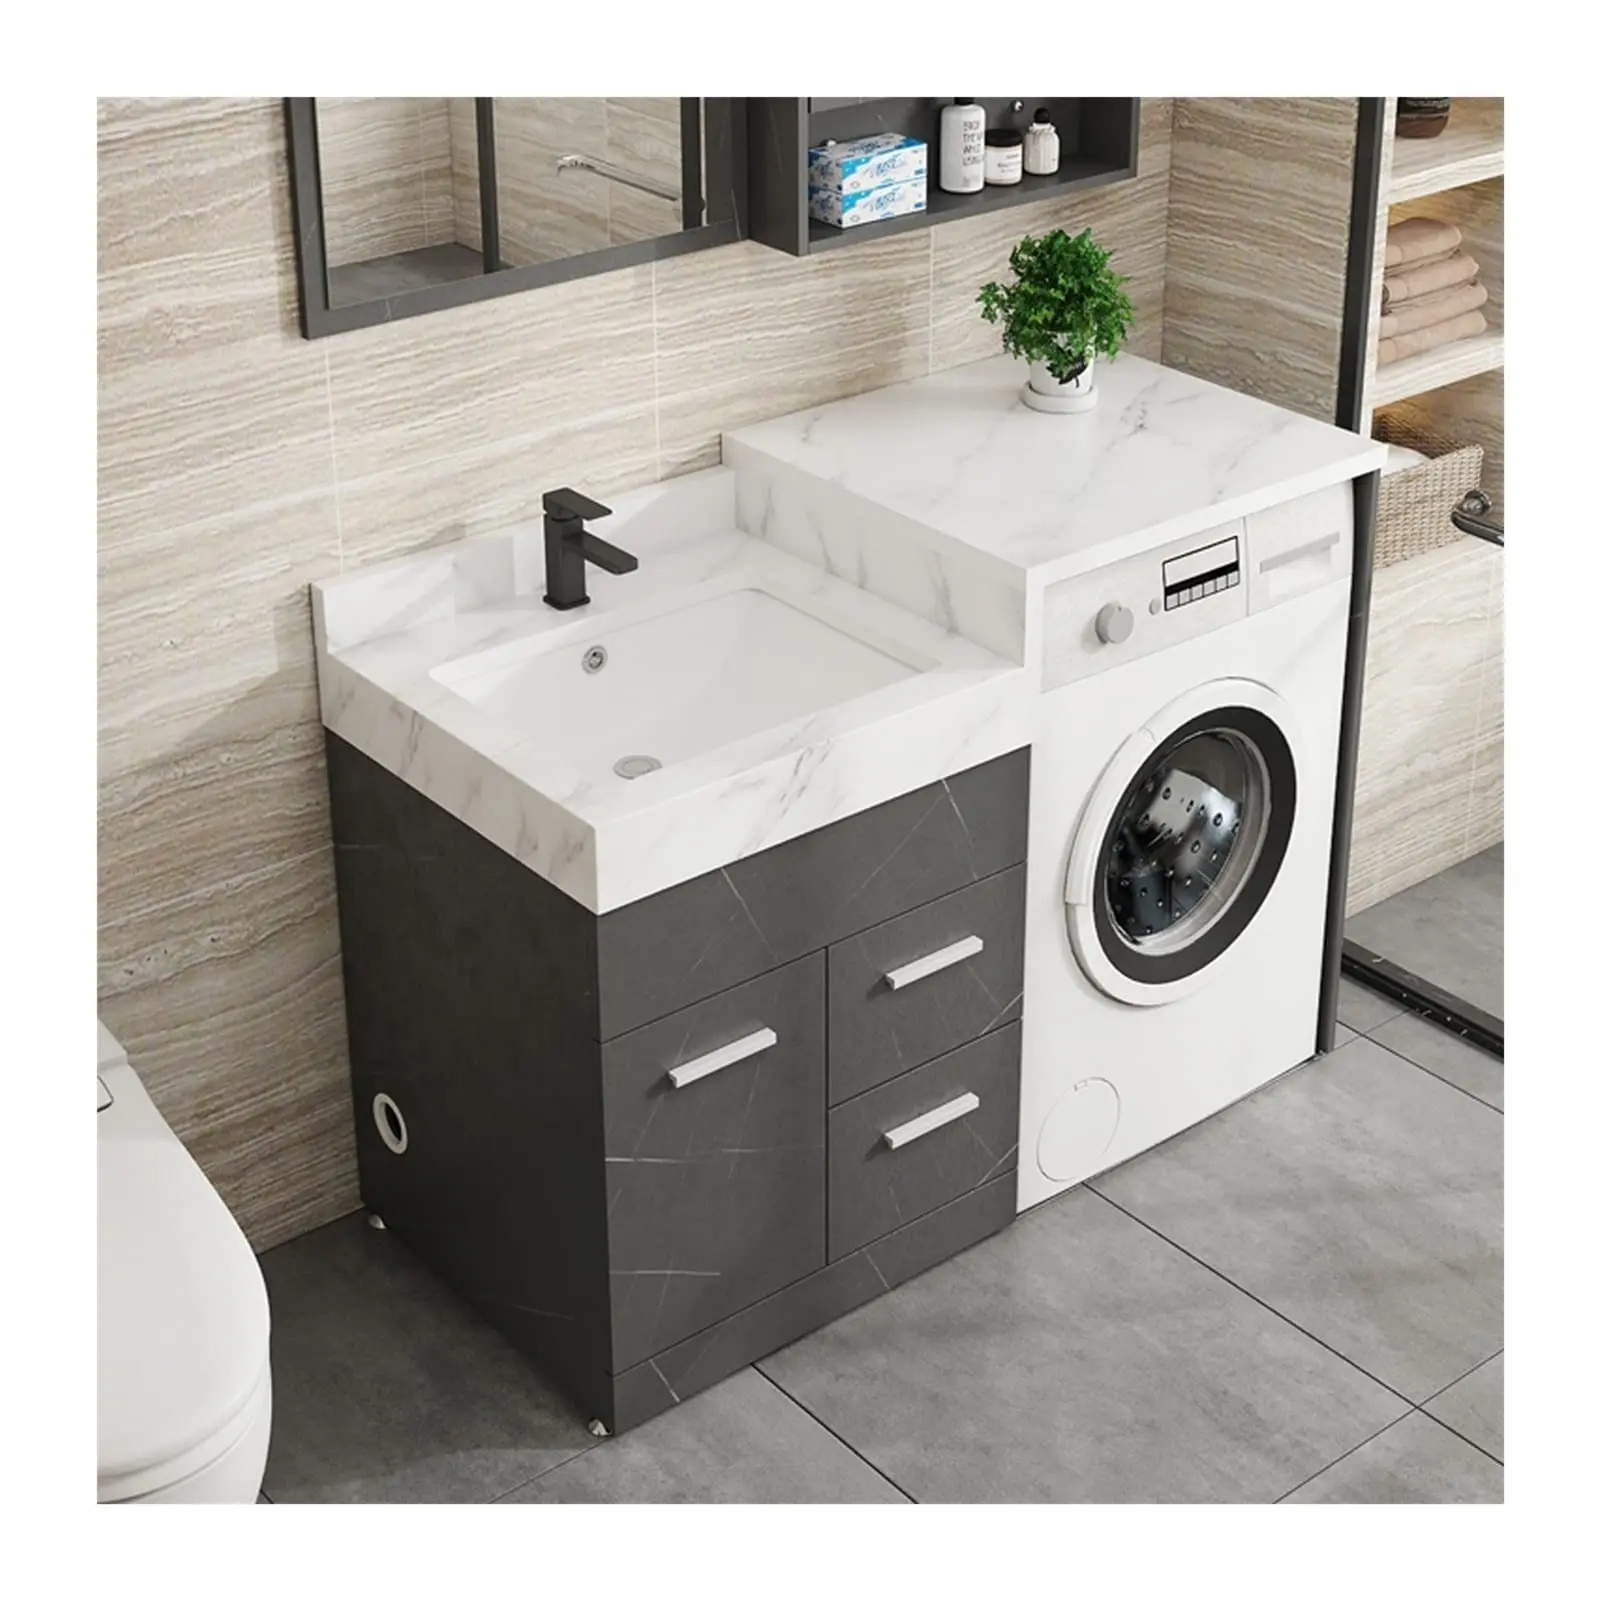 lavadora con fregadero incorporado - Qué significa Water Jet en la lavadora